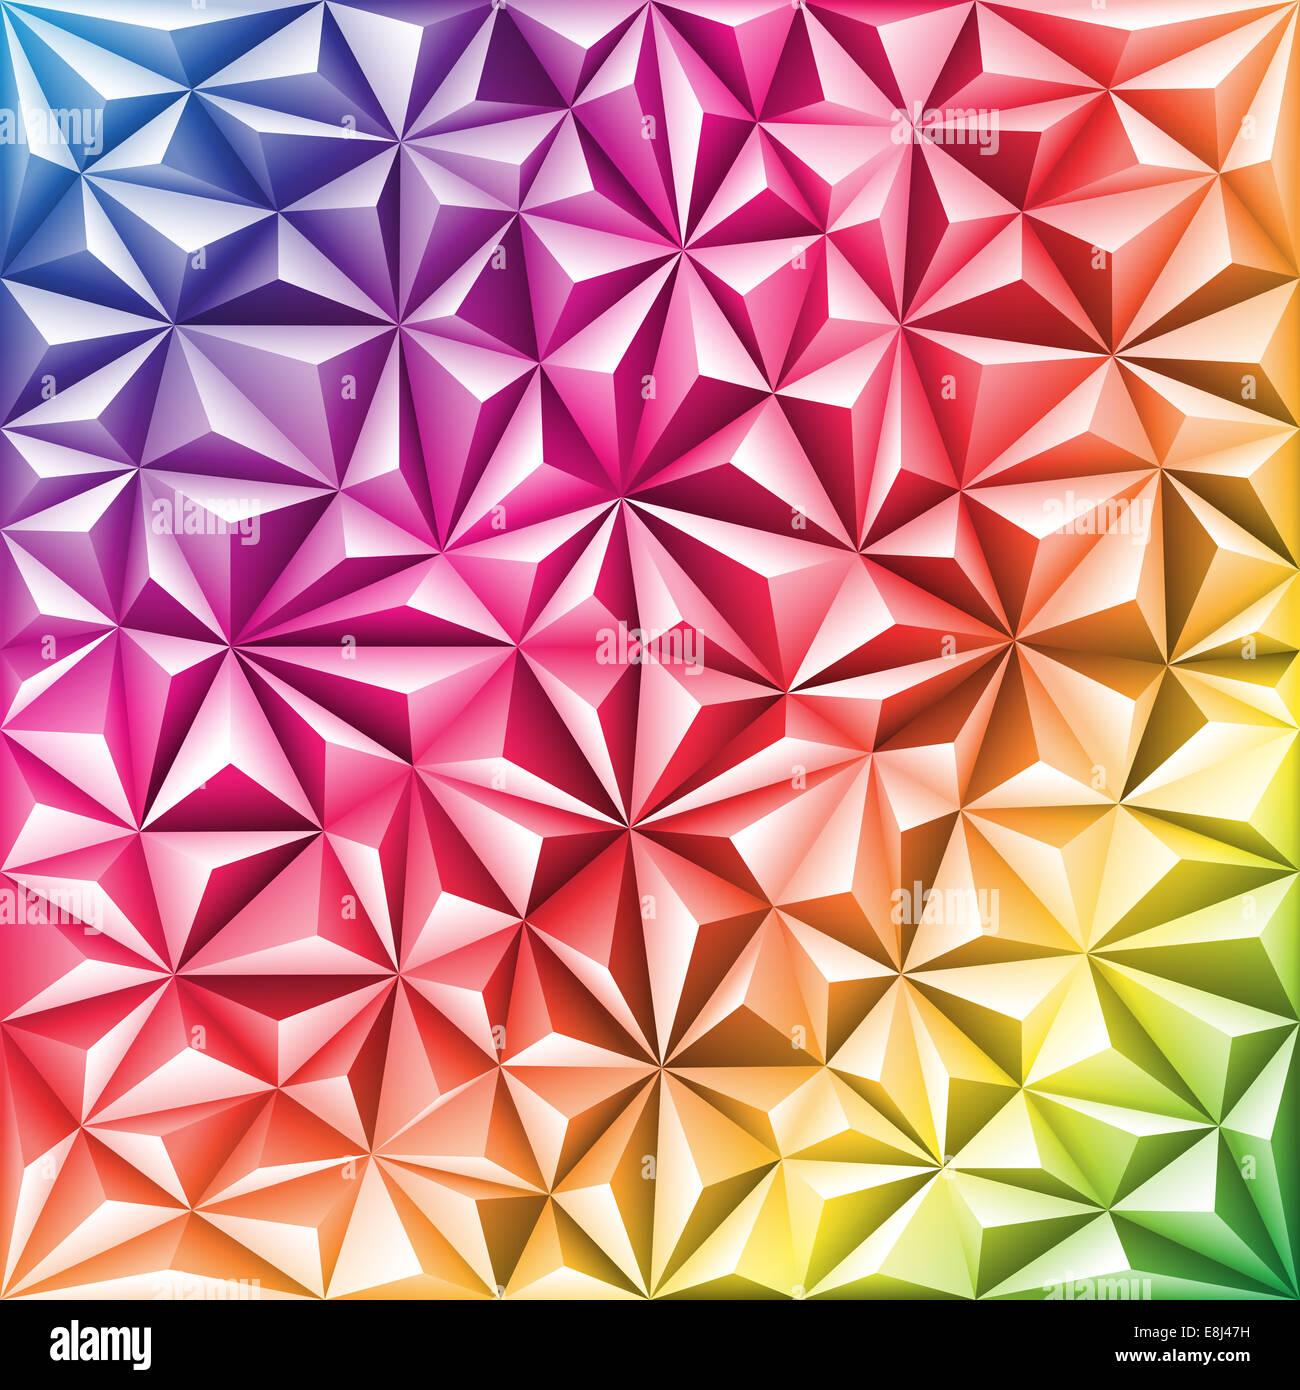 Bunte abstrakte Dreieck Mosaik-Muster, Hintergrund für design  Stockfotografie - Alamy